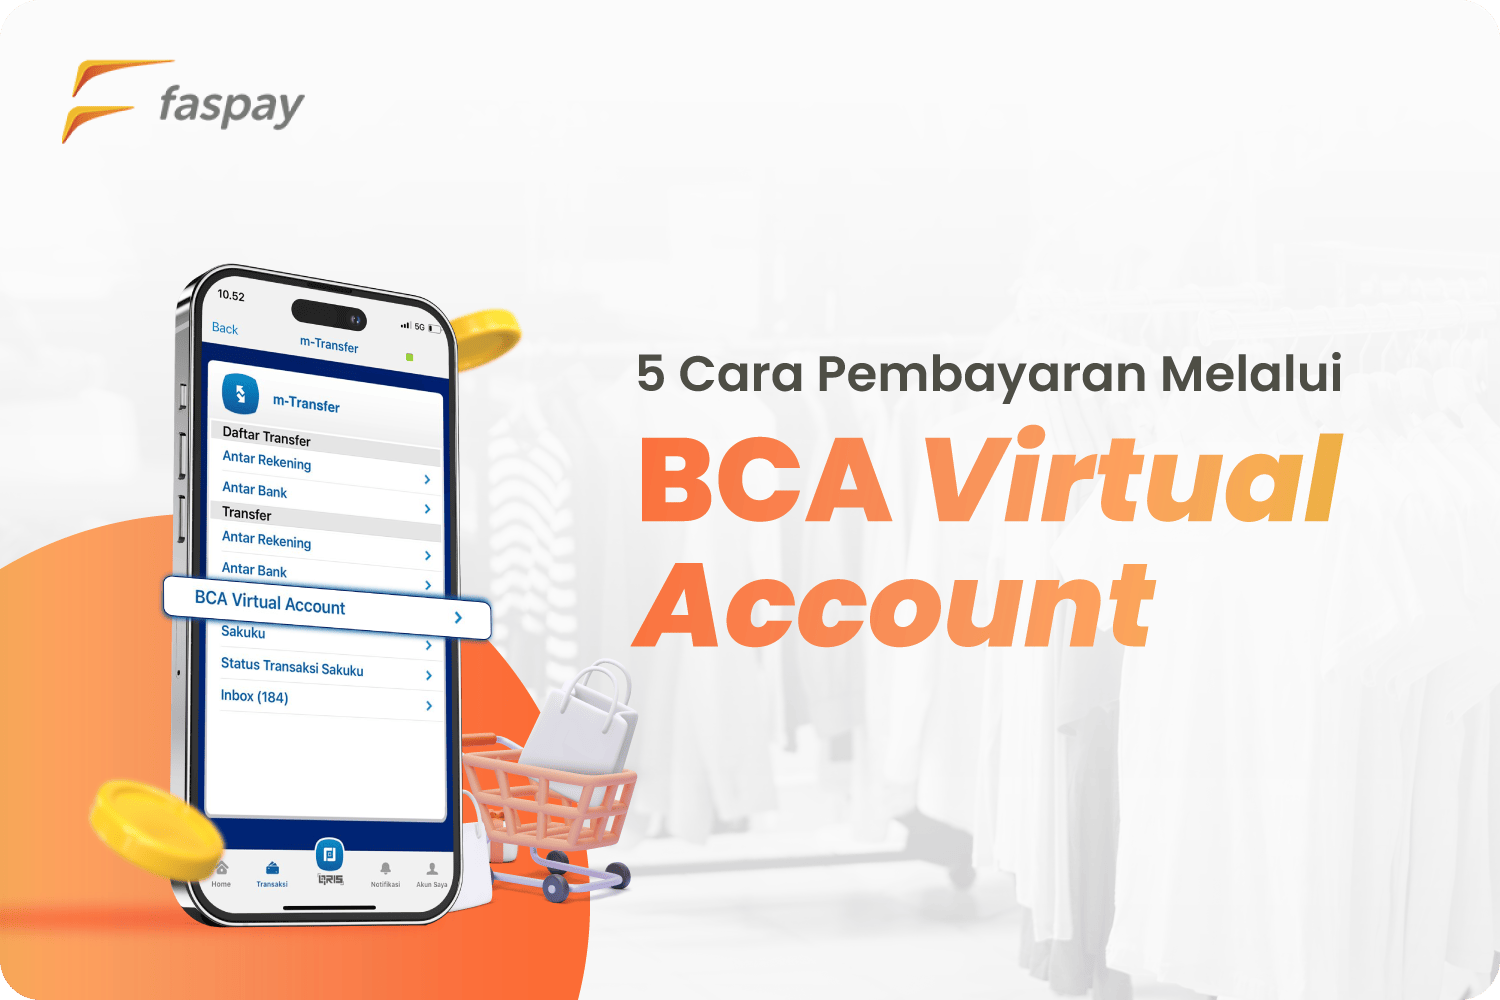 5 Cara Pembayaran Melalui BCA Virtual Account Faspay